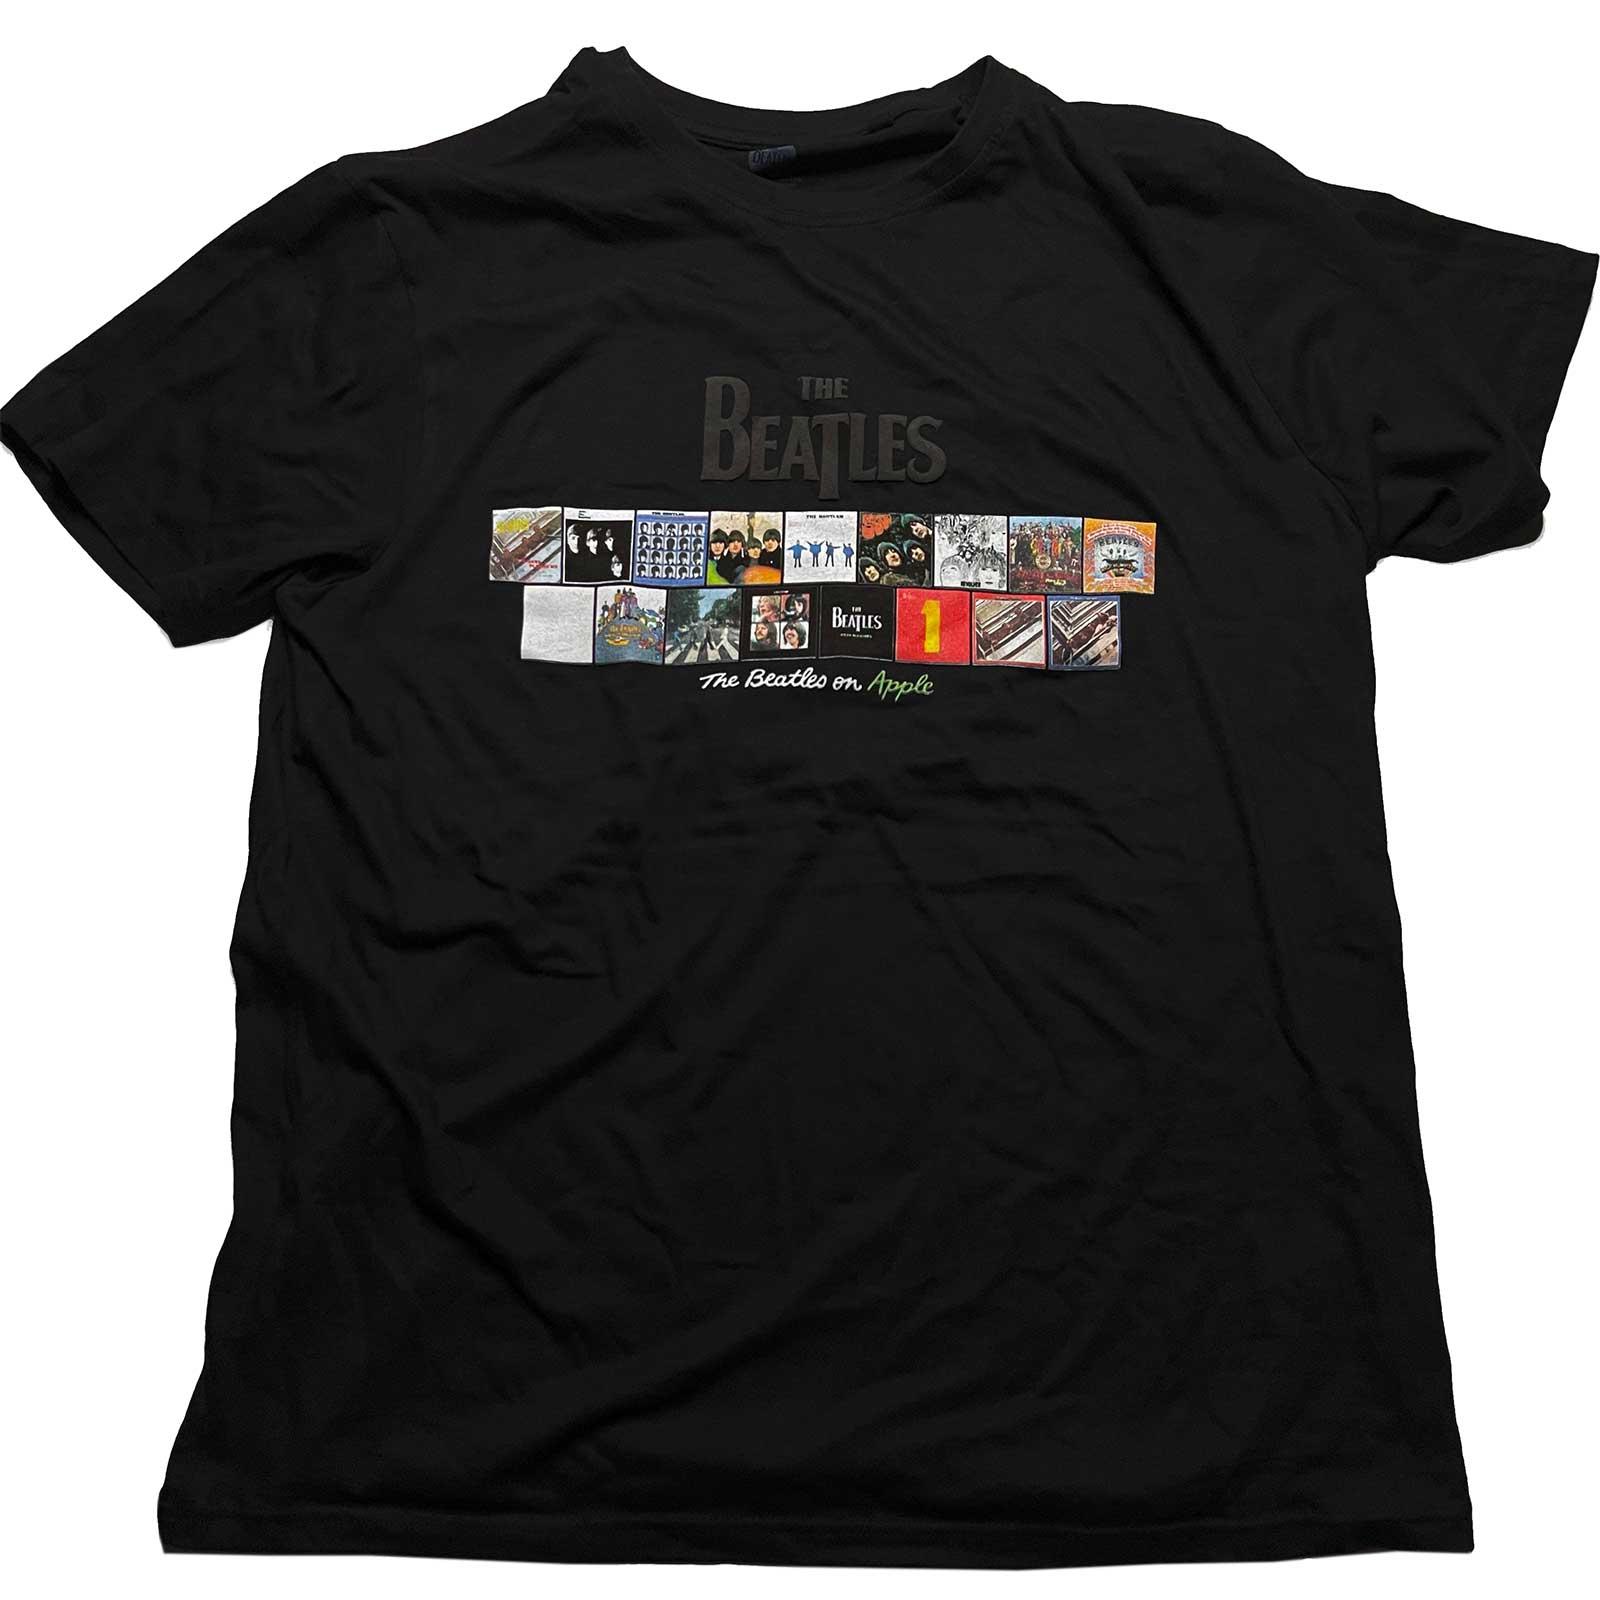 (ザ・ビートルズ) The Beatles オフィシャル商品 ユニセックス Albums on Apple Tシャツ コットン 半袖 トップス 